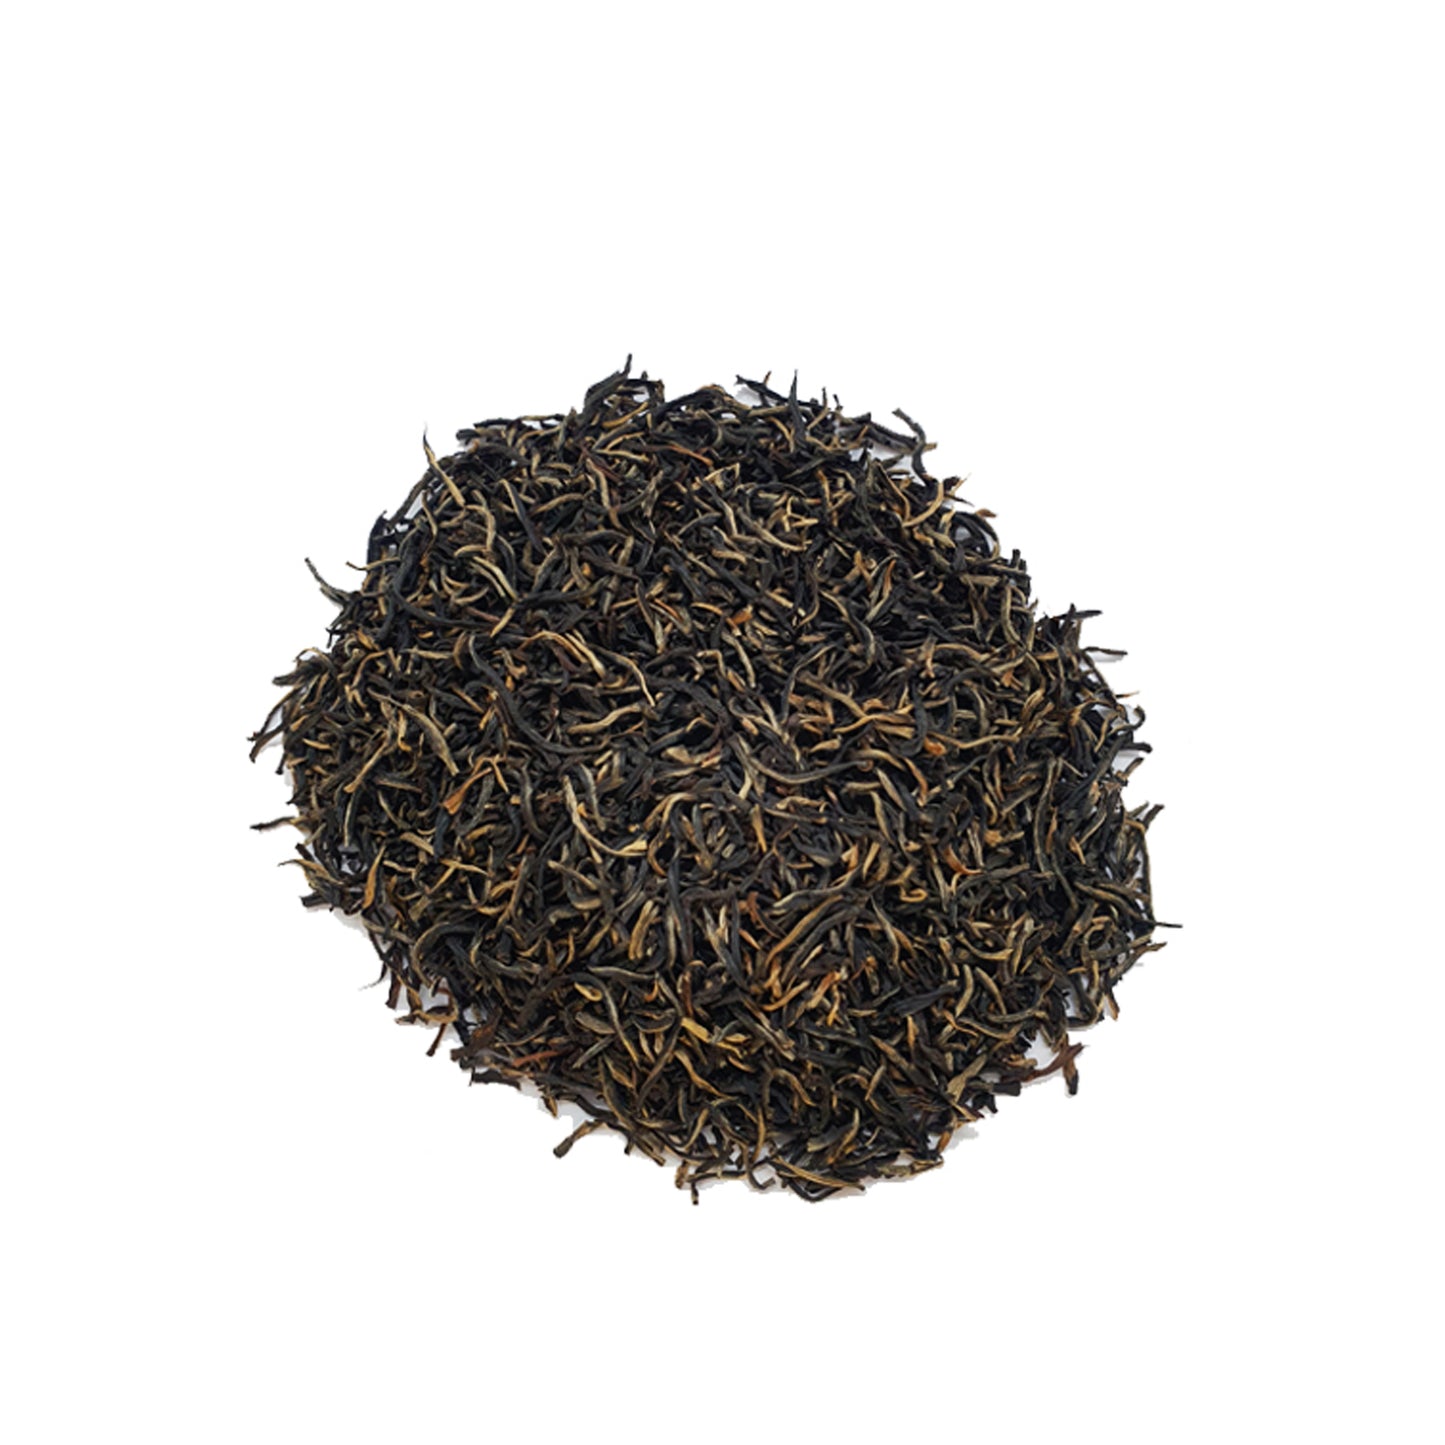 Черный чай сорта Lumbini Sinharaja (FBOPF EX SP) (25 г)